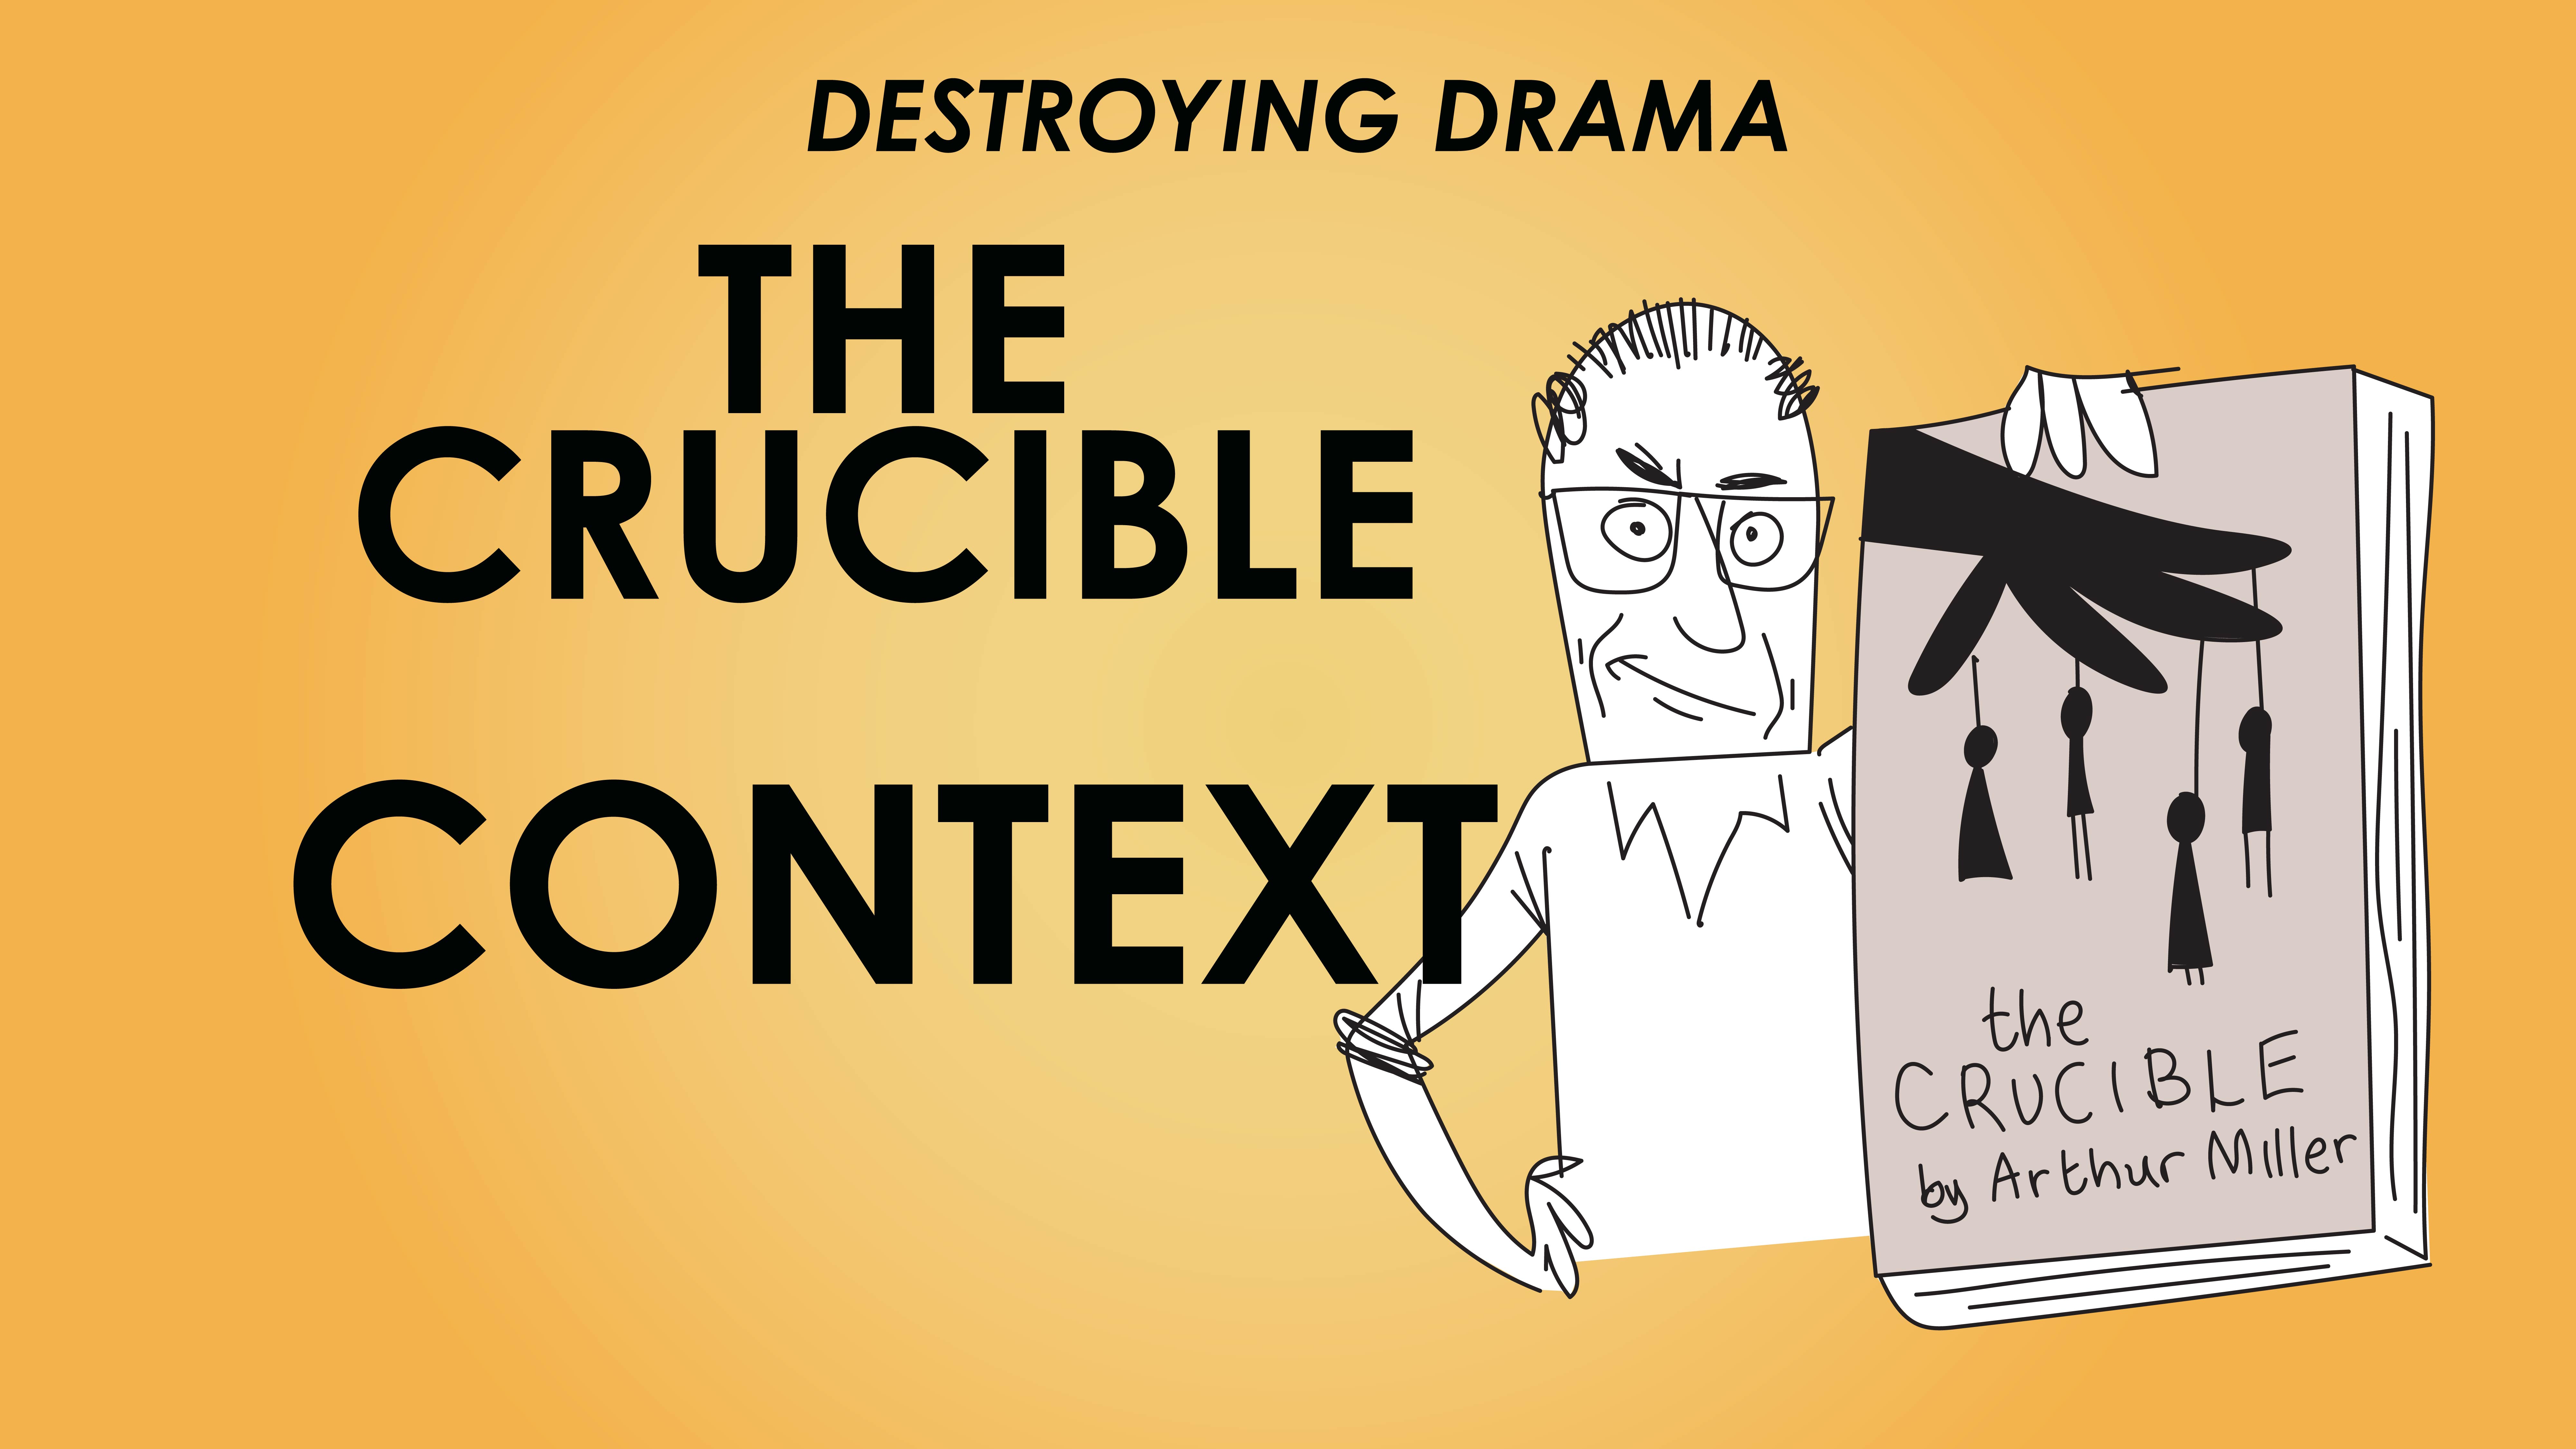 The Crucible - Arthur Miller - Context - Destroying Drama Series